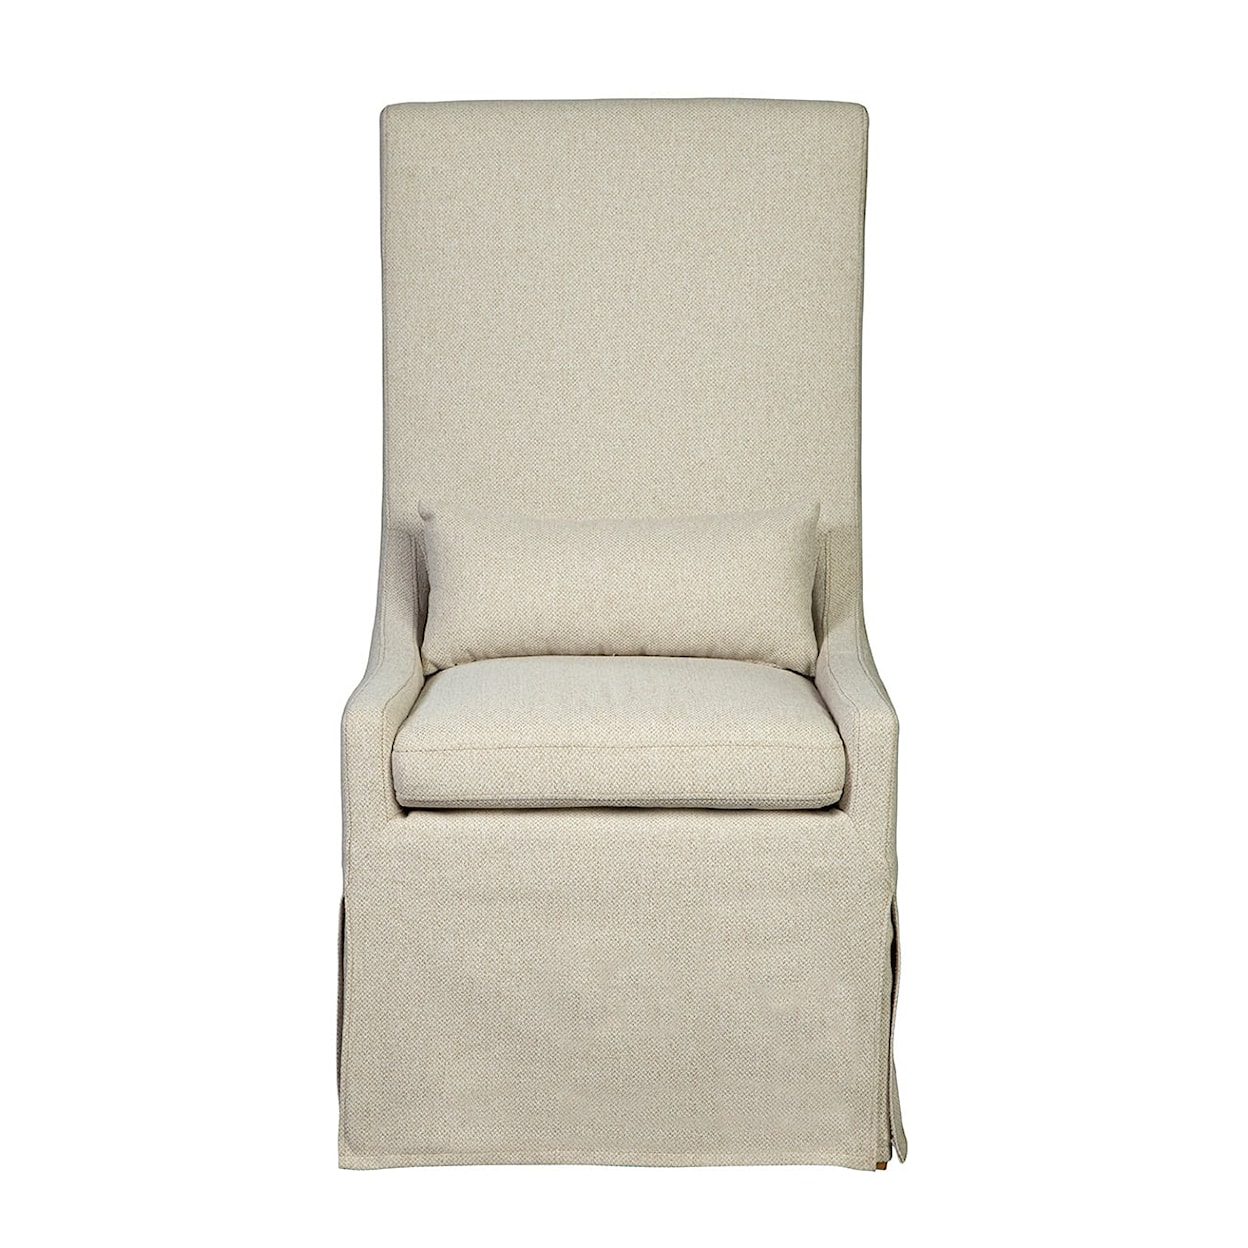 Furniture Classics Furniture Classics Sinclair Side Chair